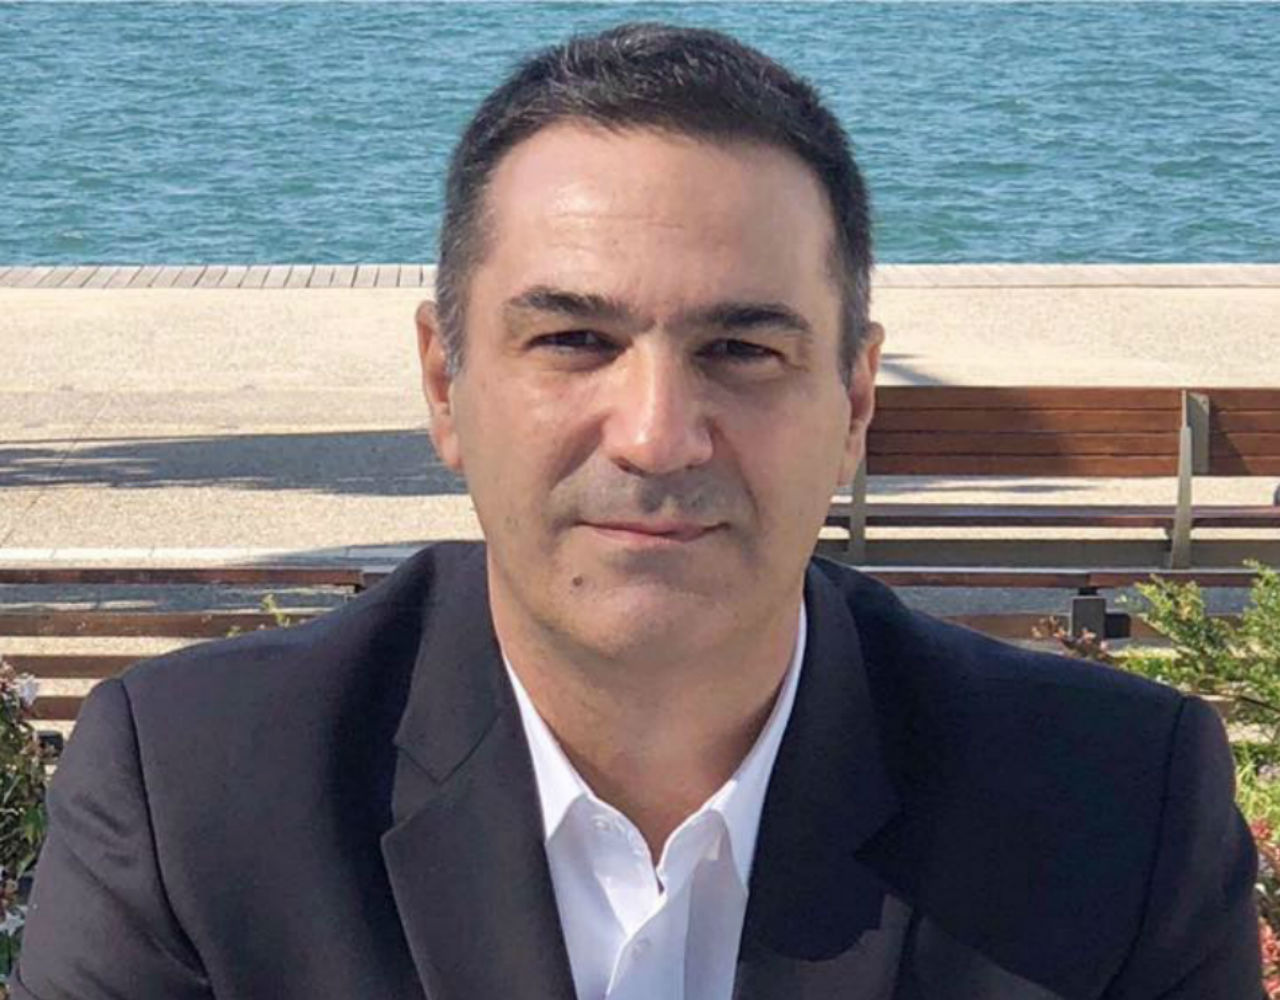 Τάκης Διαμαντόπουλος: “Θέλω μία βιώσιμη χώρα για τα παιδιά μου”